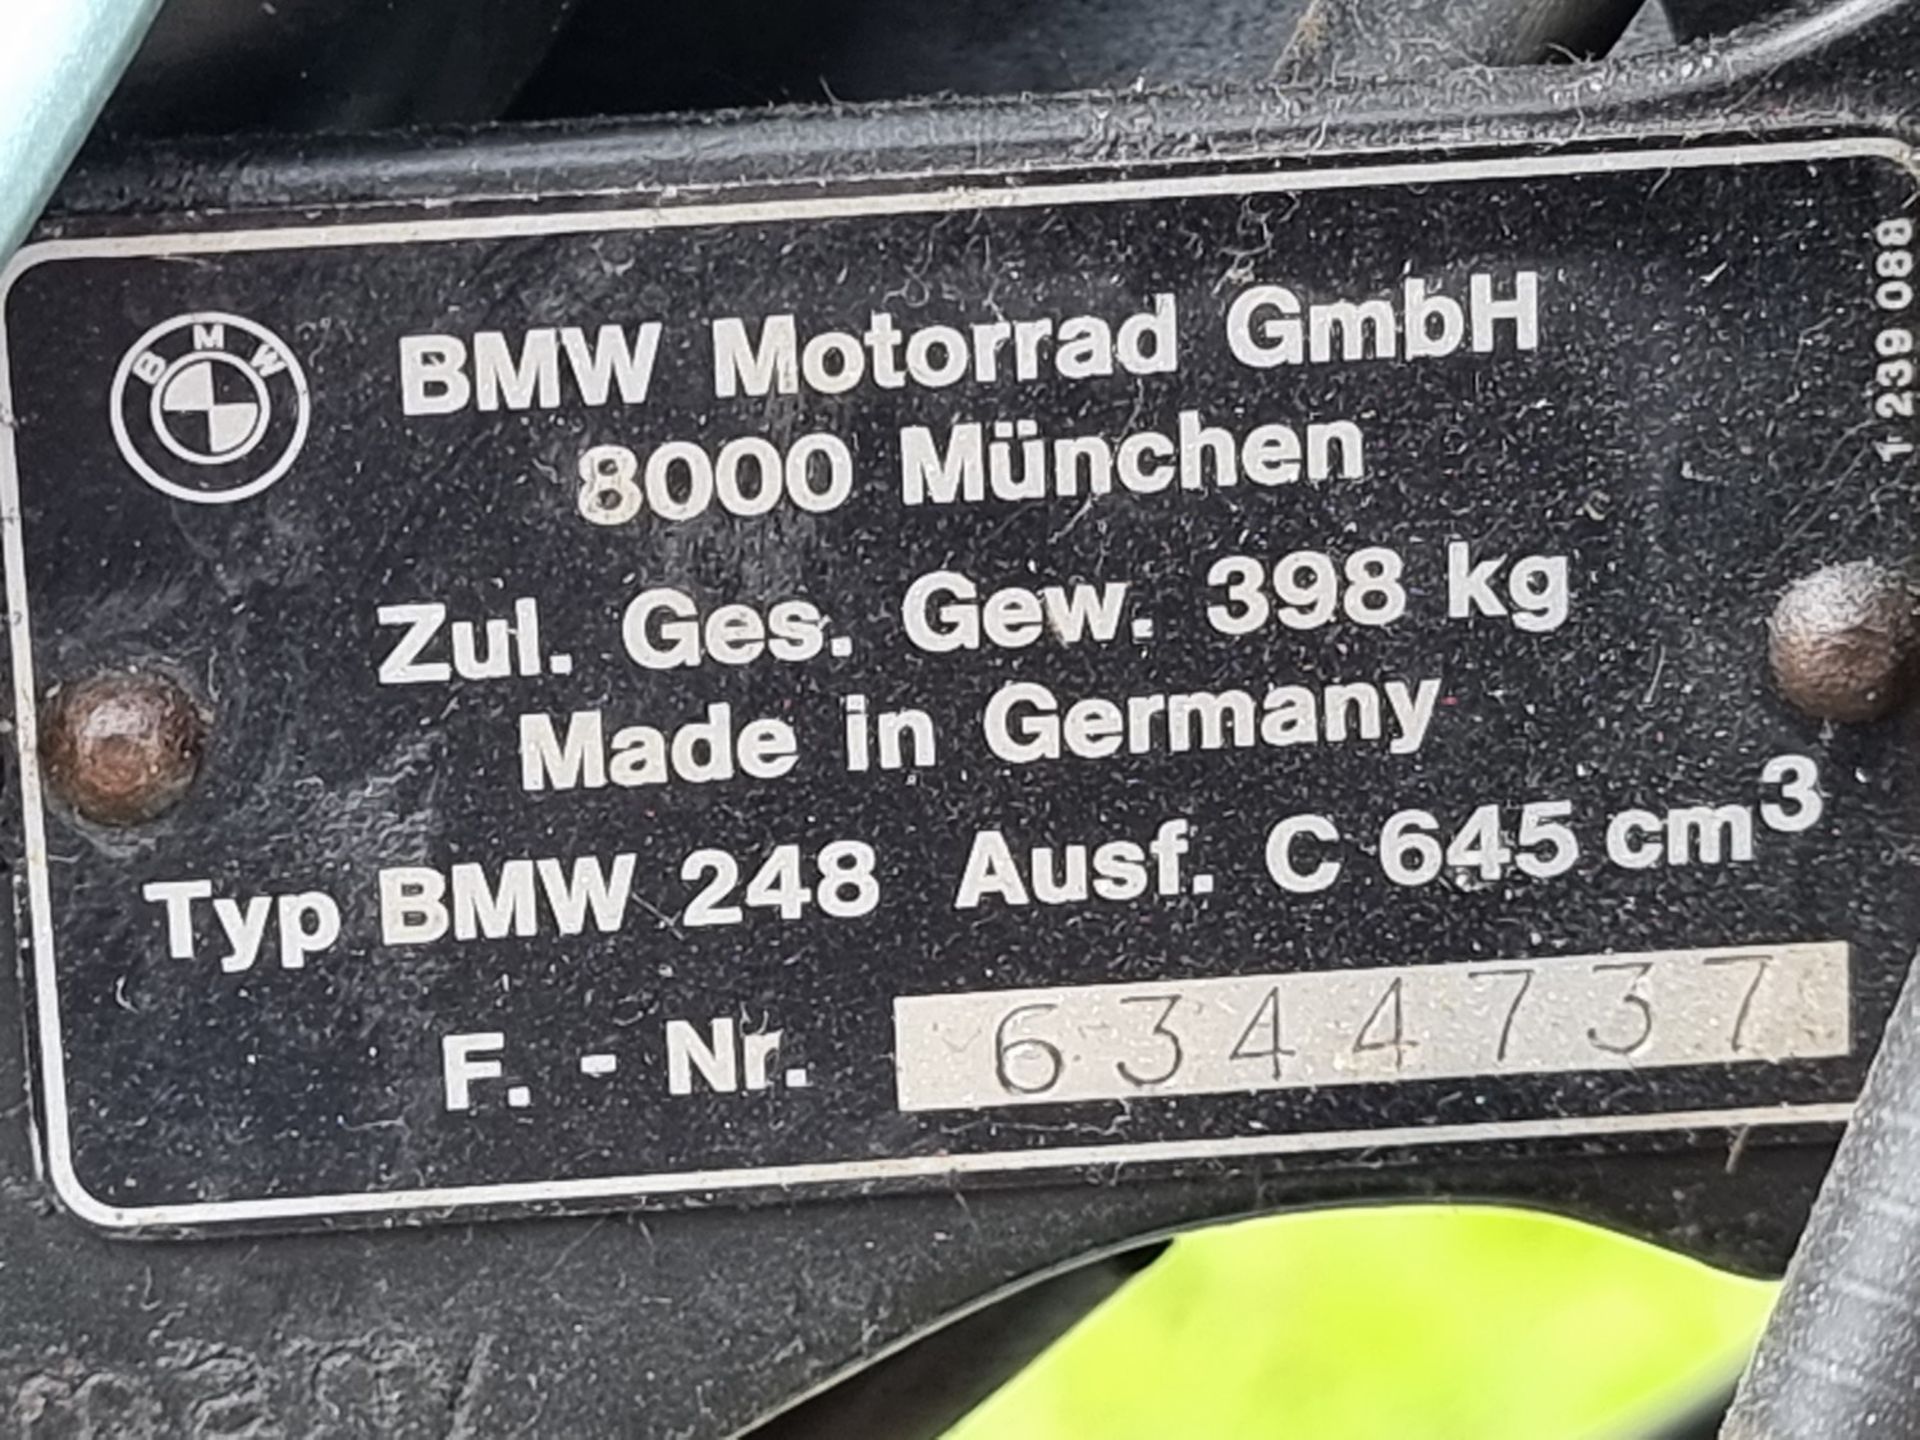 1981 BMW R65, 649cc. Registration number PBY 360W. Frame number 6344737. Engine number 6304629. - Image 14 of 15